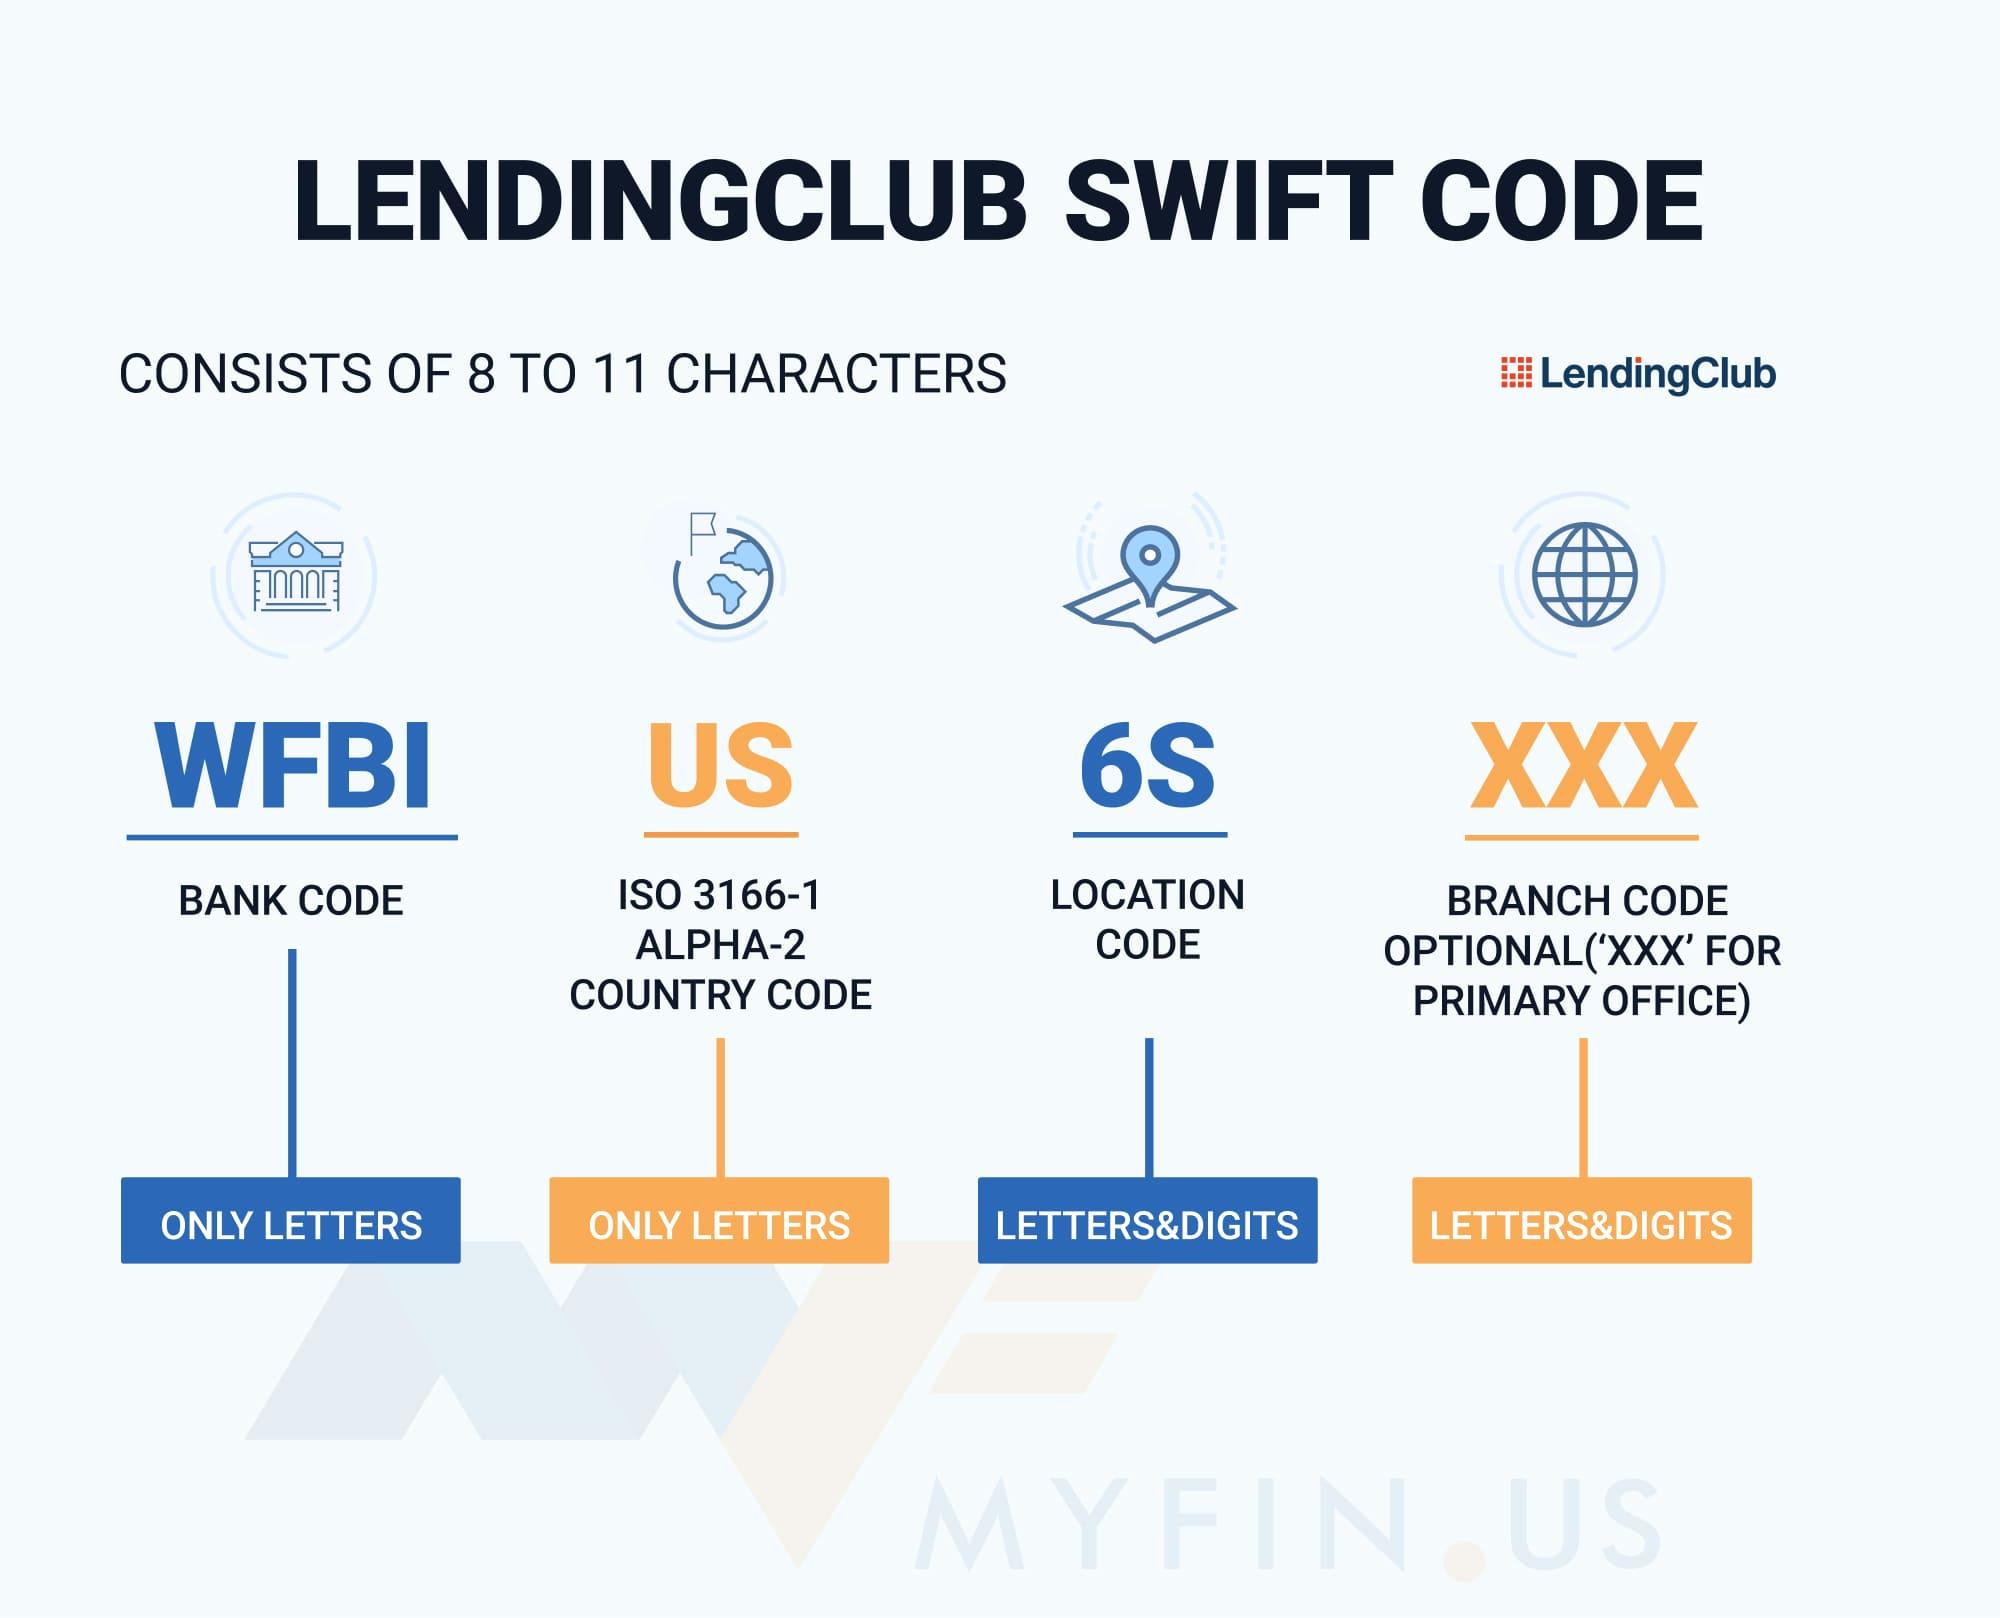 SWIFT-code LendingClub